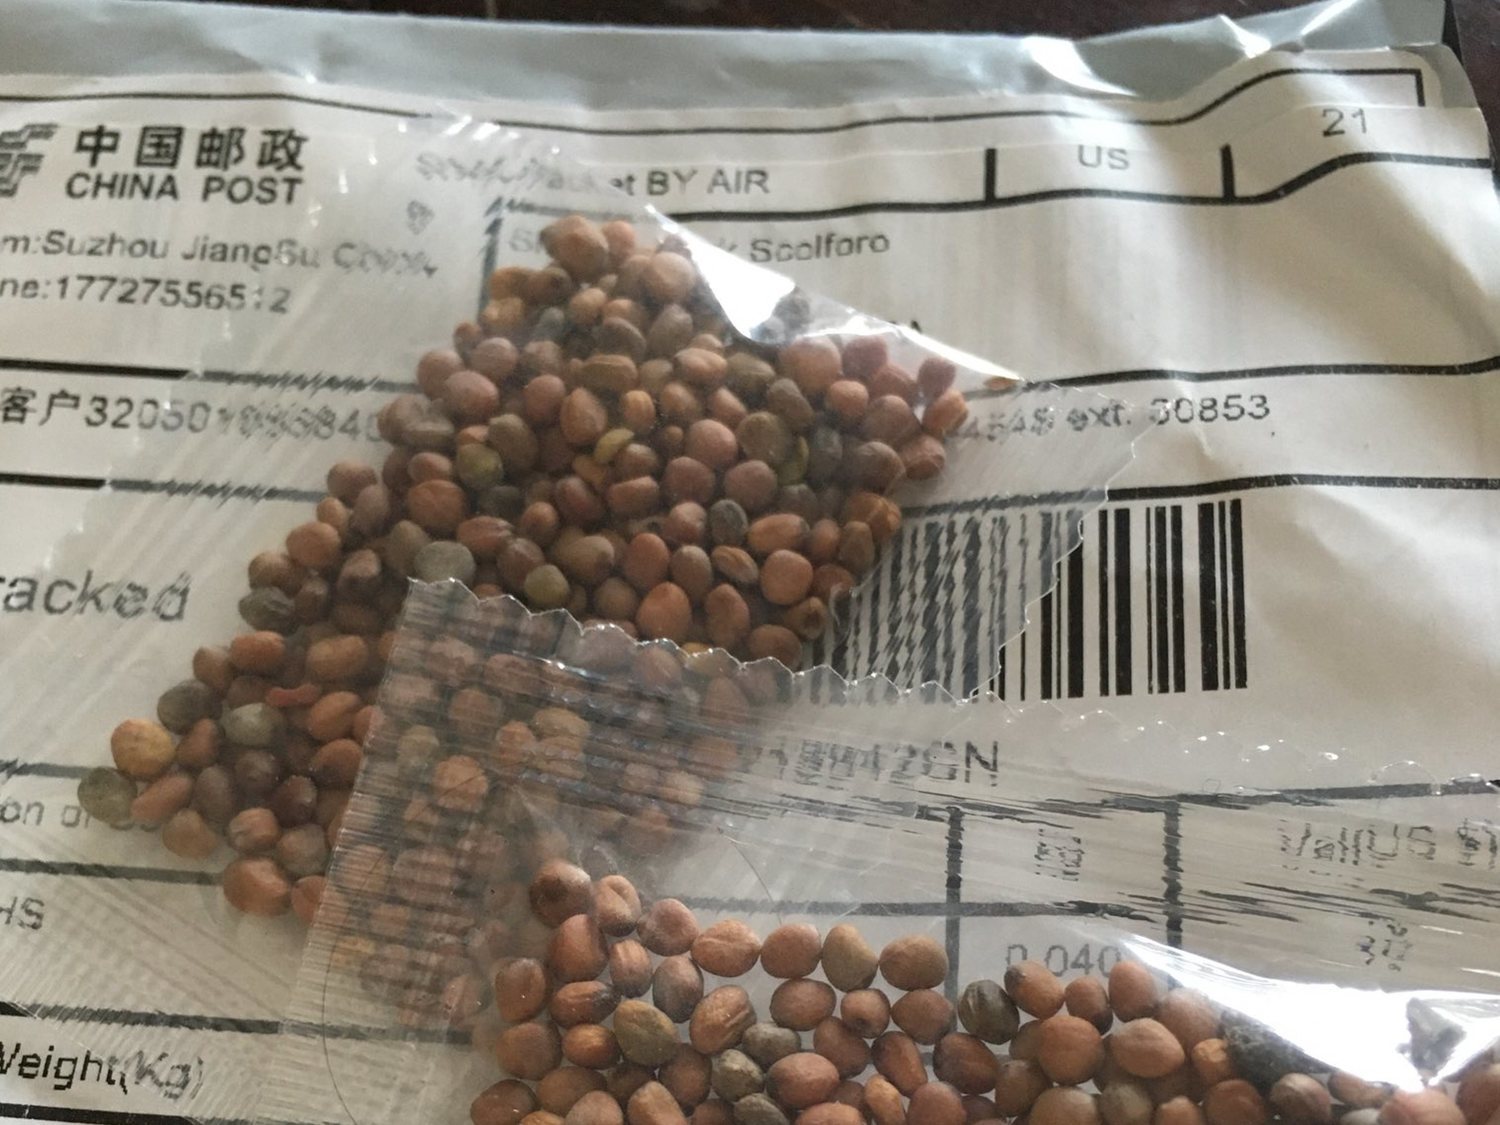 Ciudadanos de EEUU reciben sospechosos paquetes de semillas desde China sin haberlas pedido